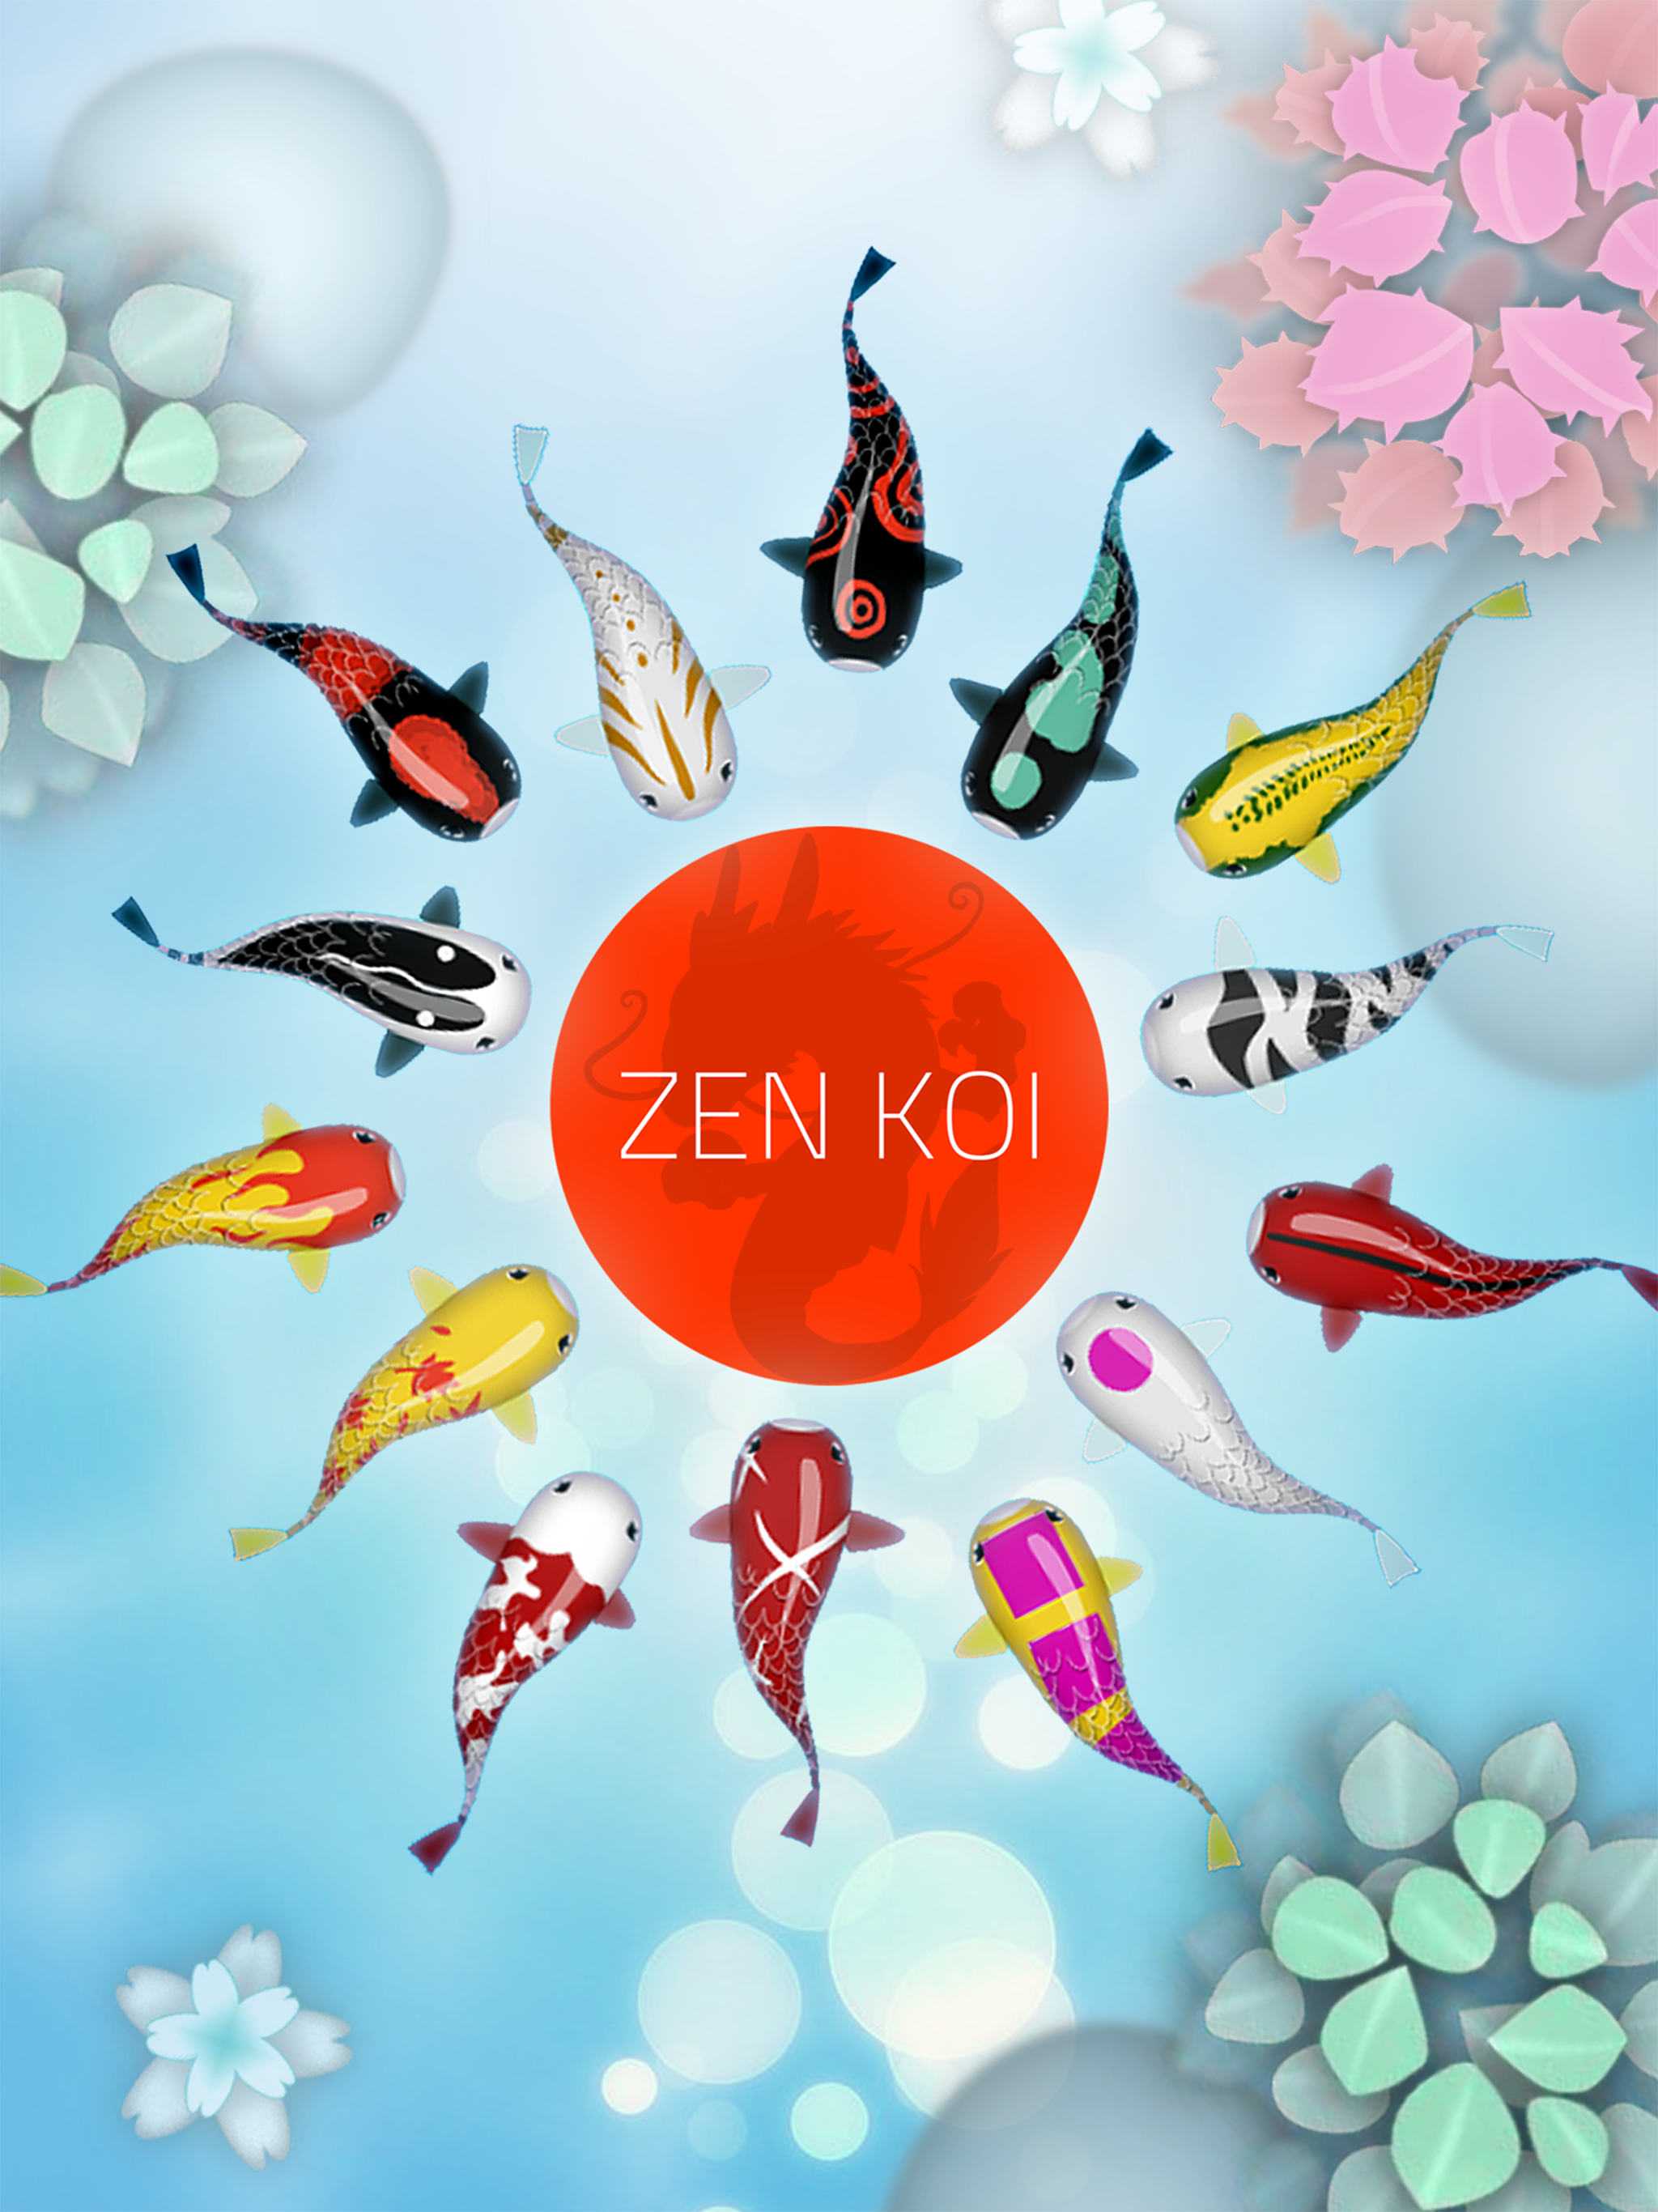 Zen Koi Classic 禅の鯉のキャプチャ